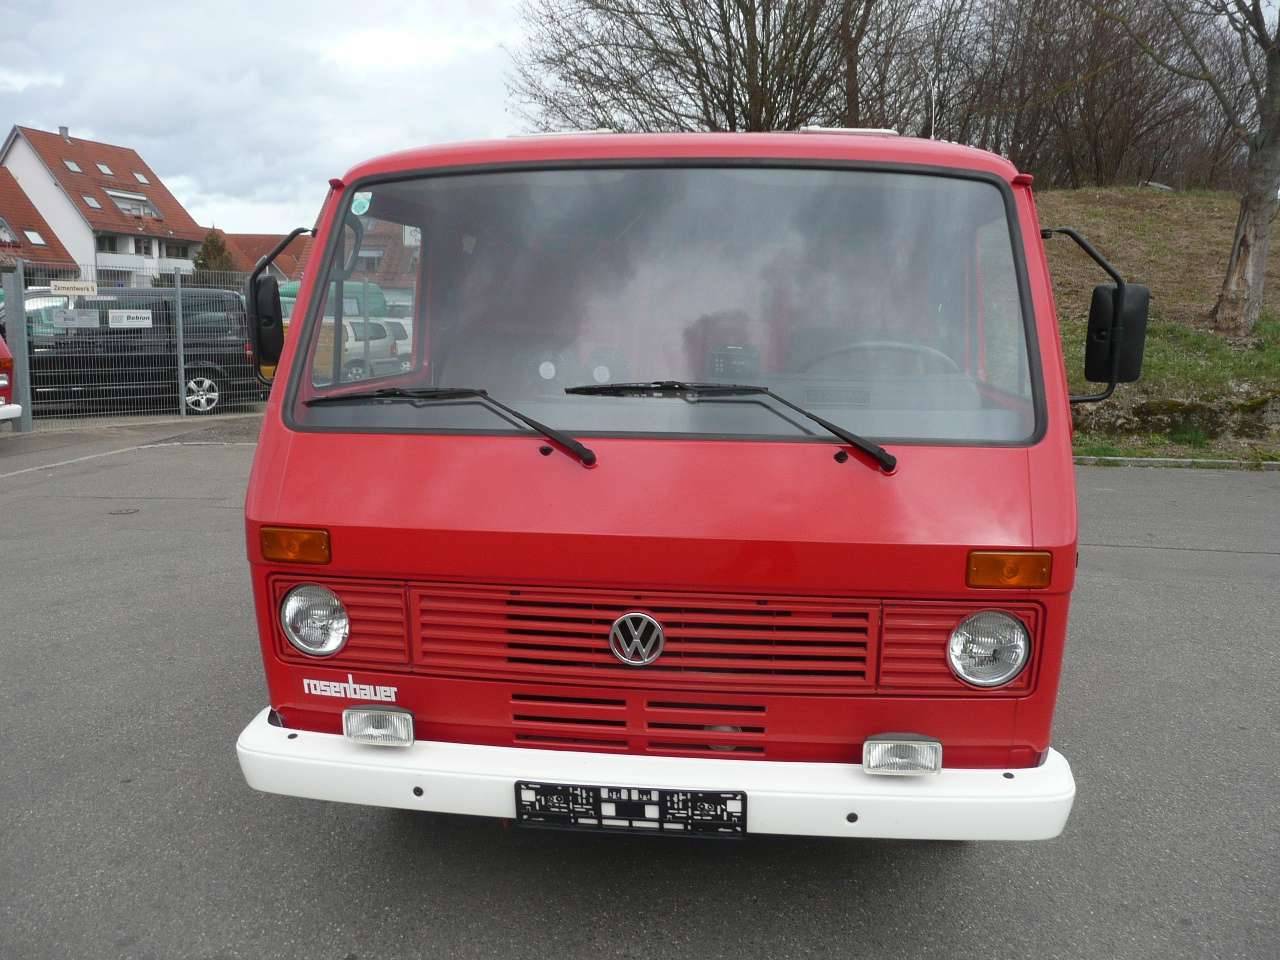 Volkswagen LT 35 2,4 (1985) für 10.900 EUR kaufen